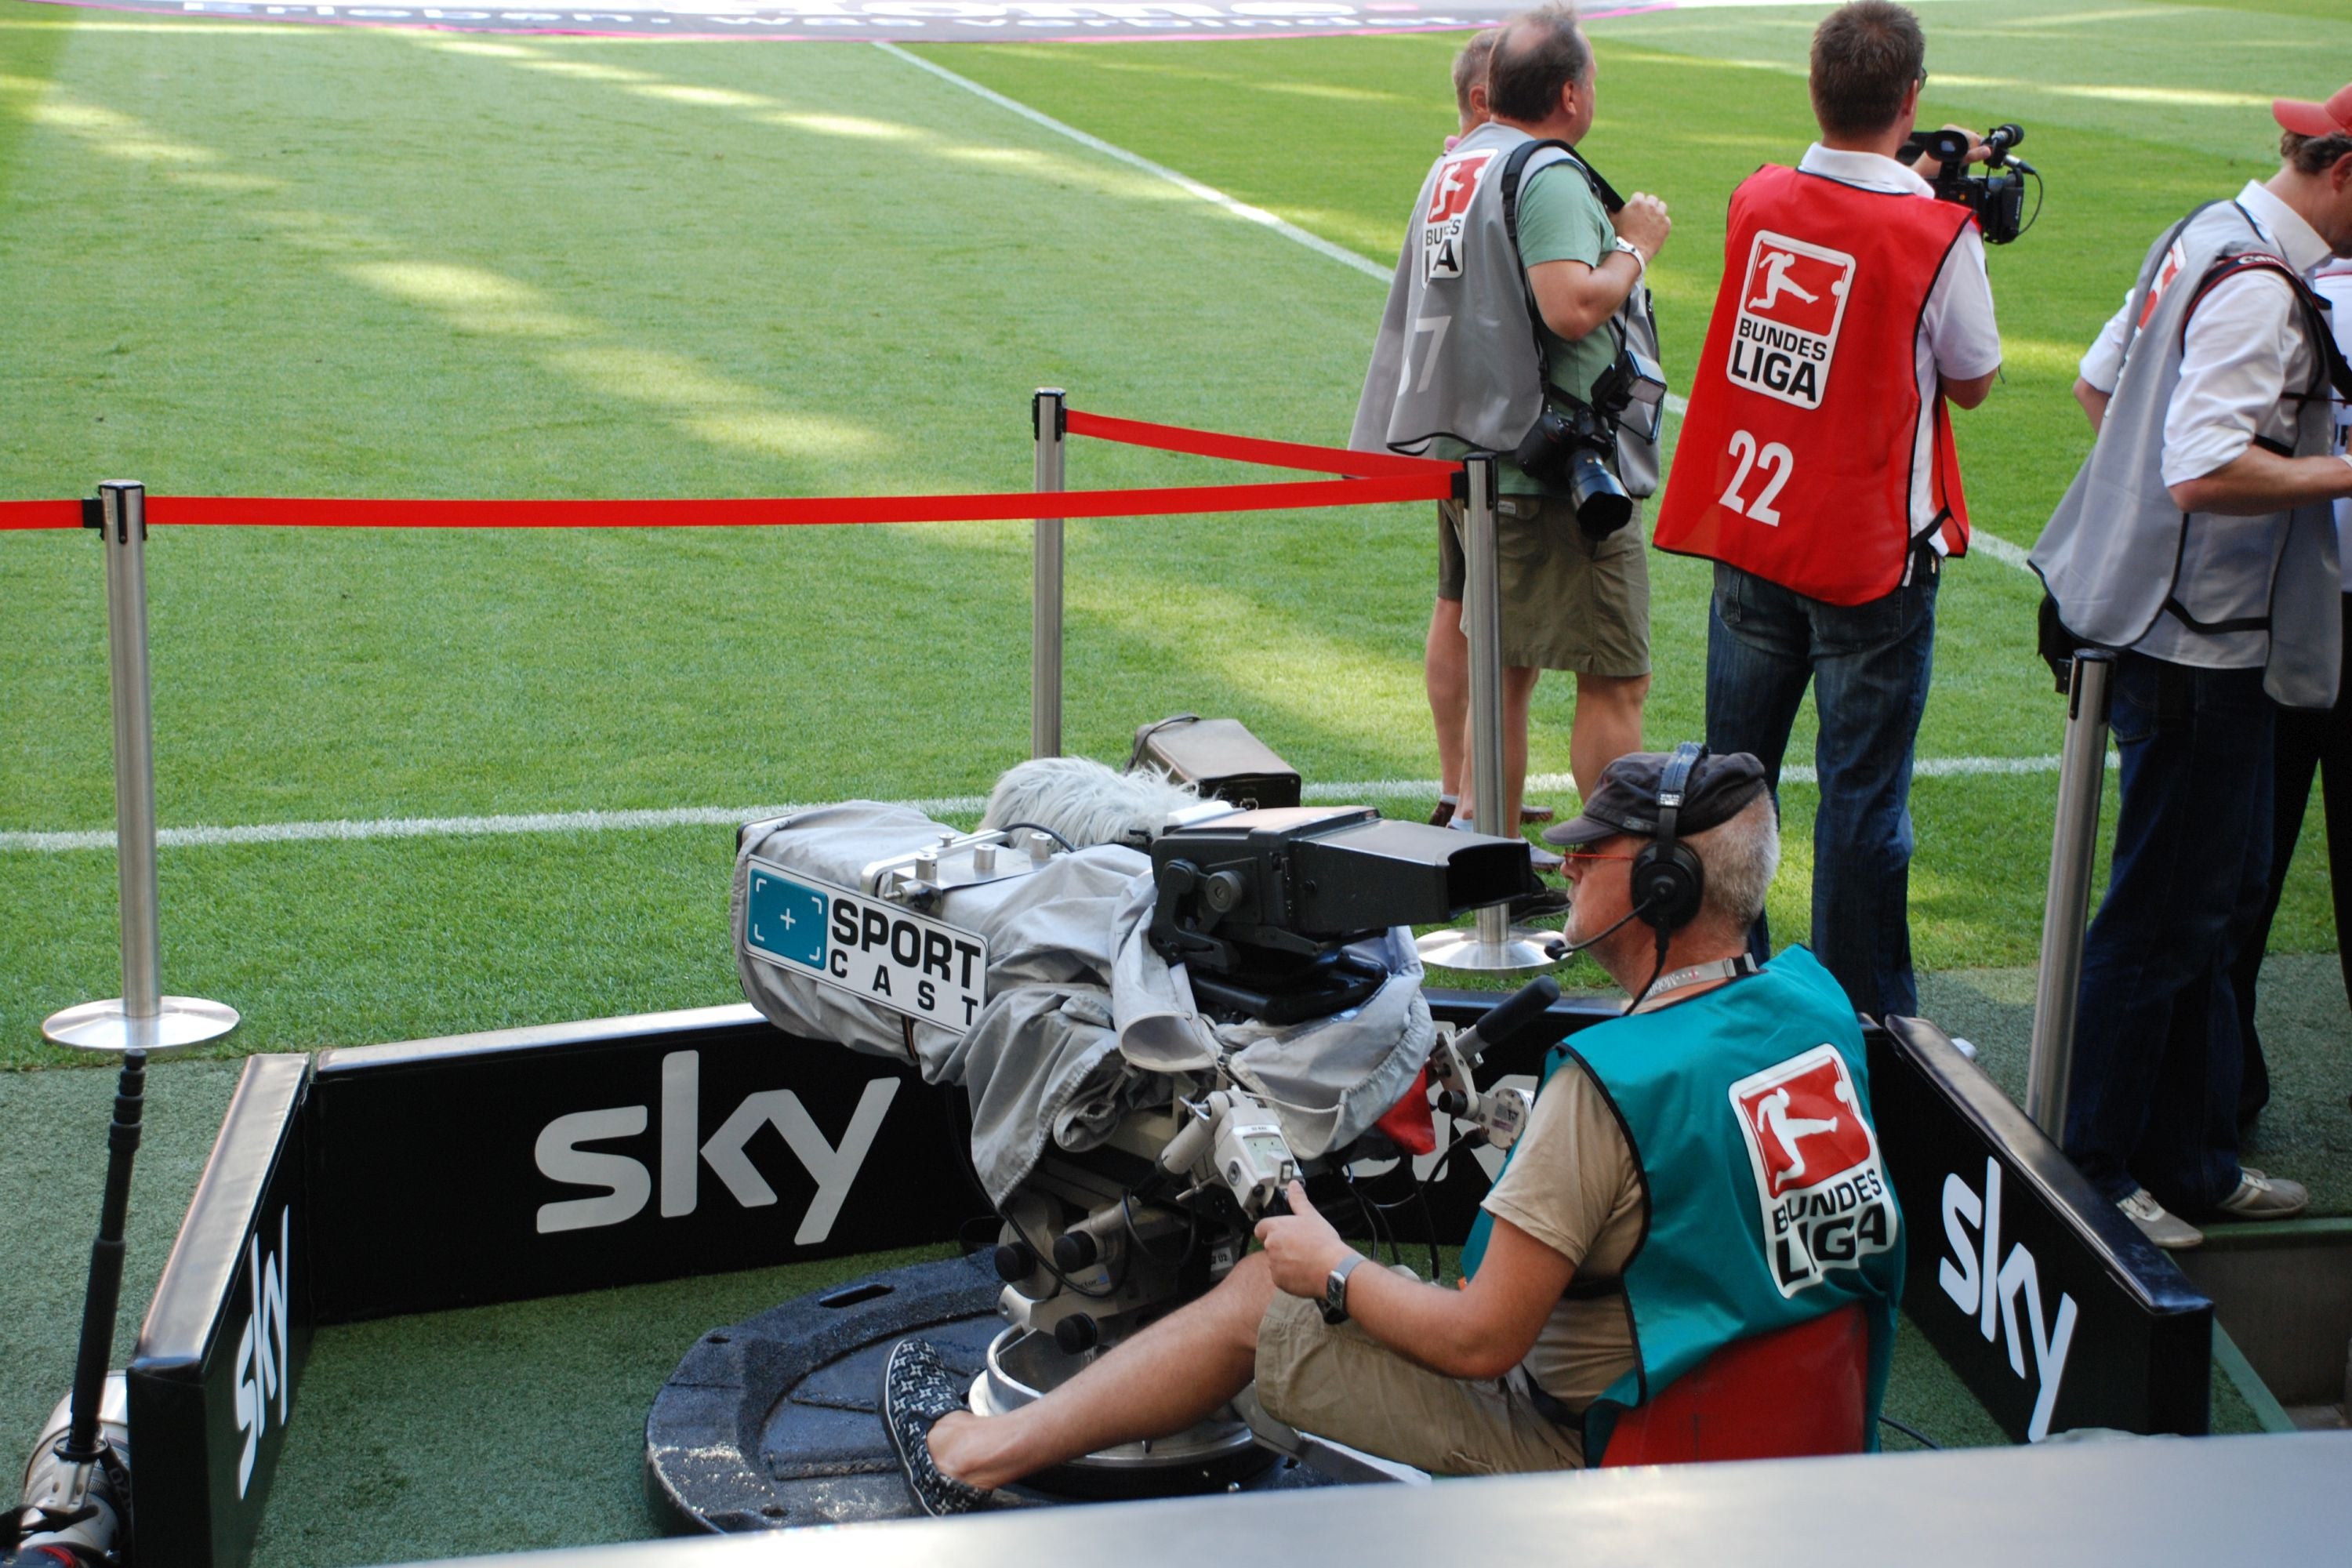 #Sky Bundesliga: Jetzt gibt’s auch Fußball live & kostenlos bei Youtube